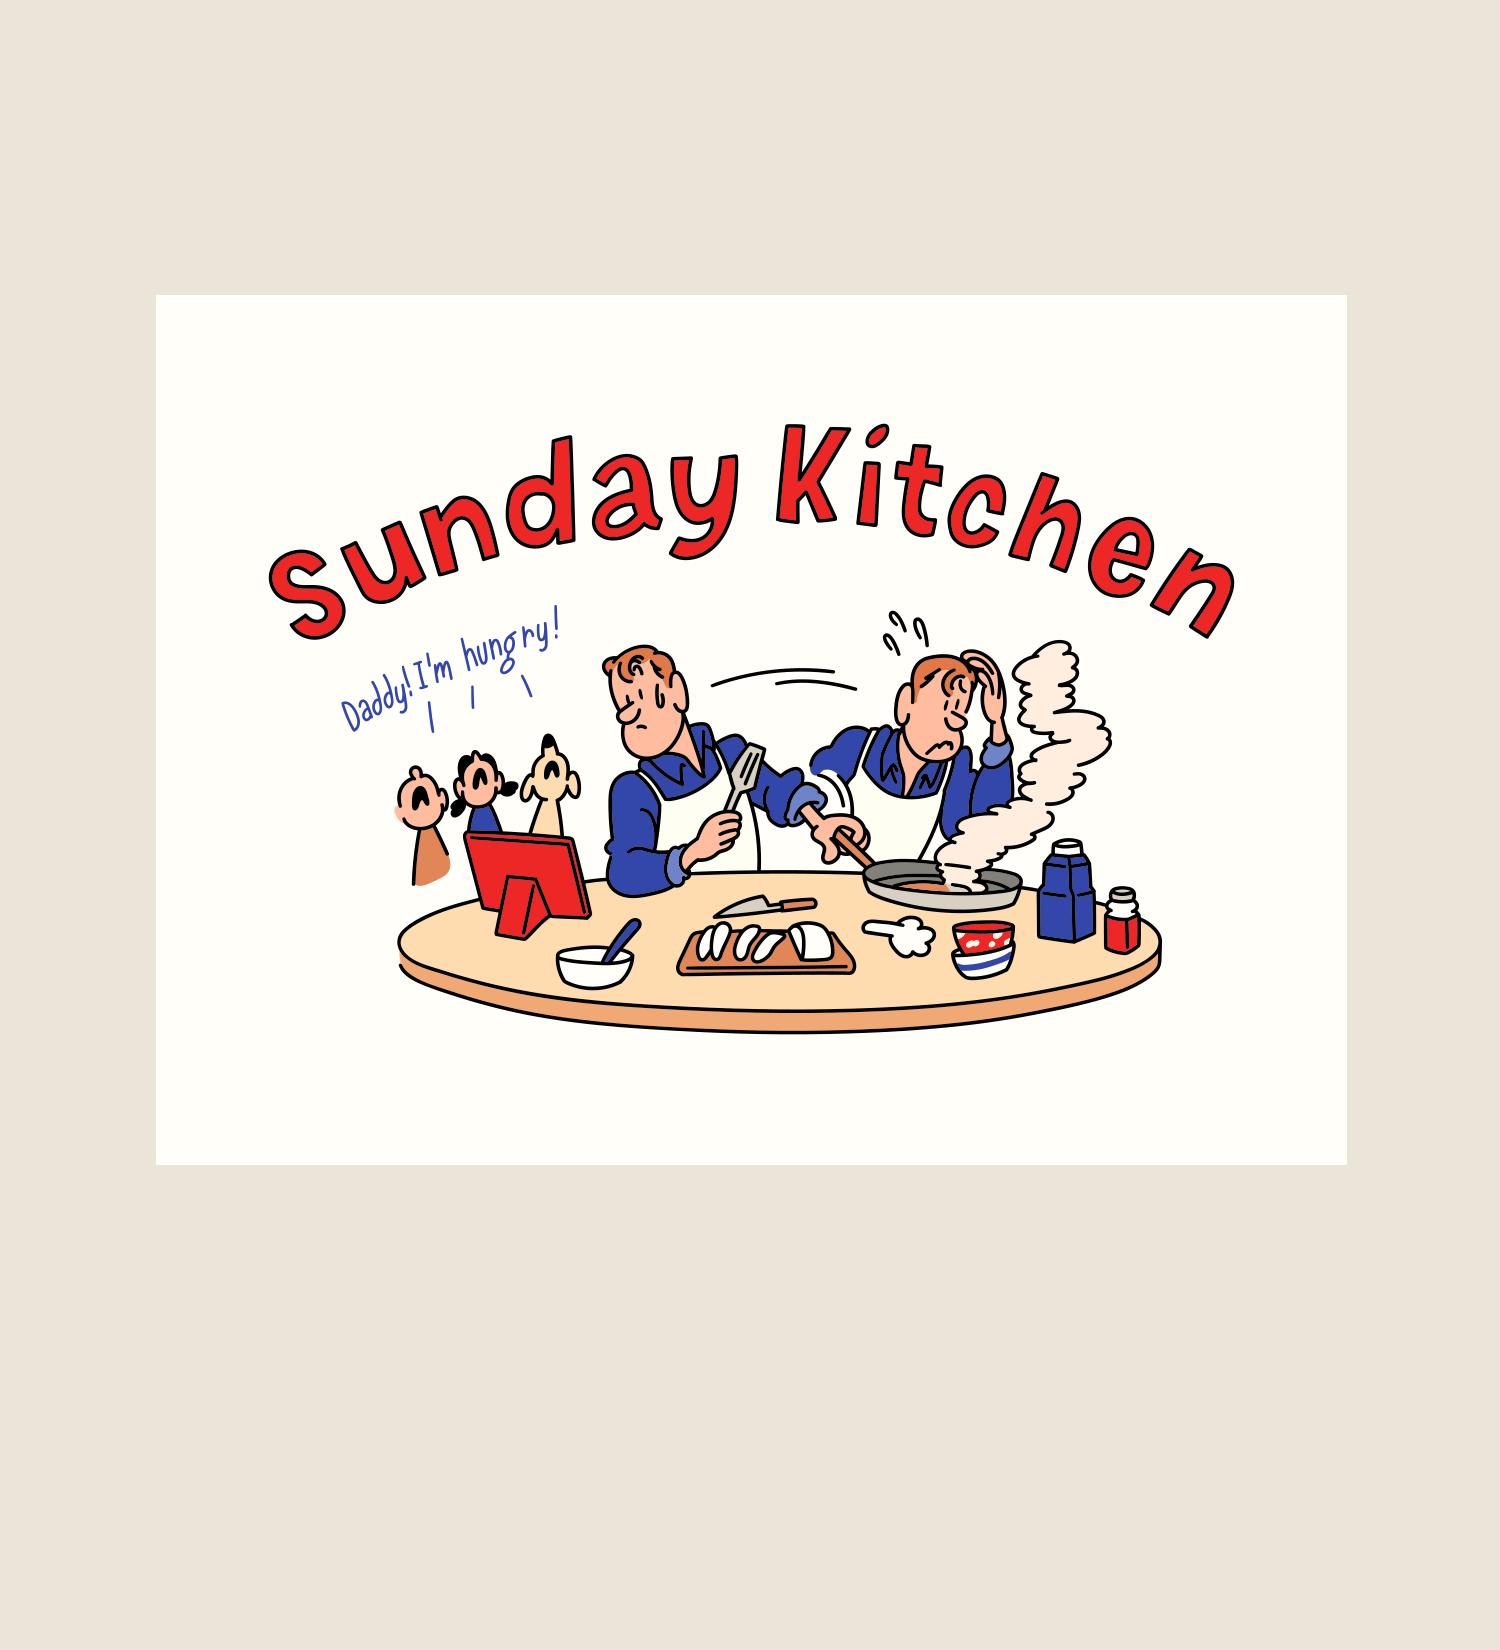 [POSTCARD] Sunday Kitchen